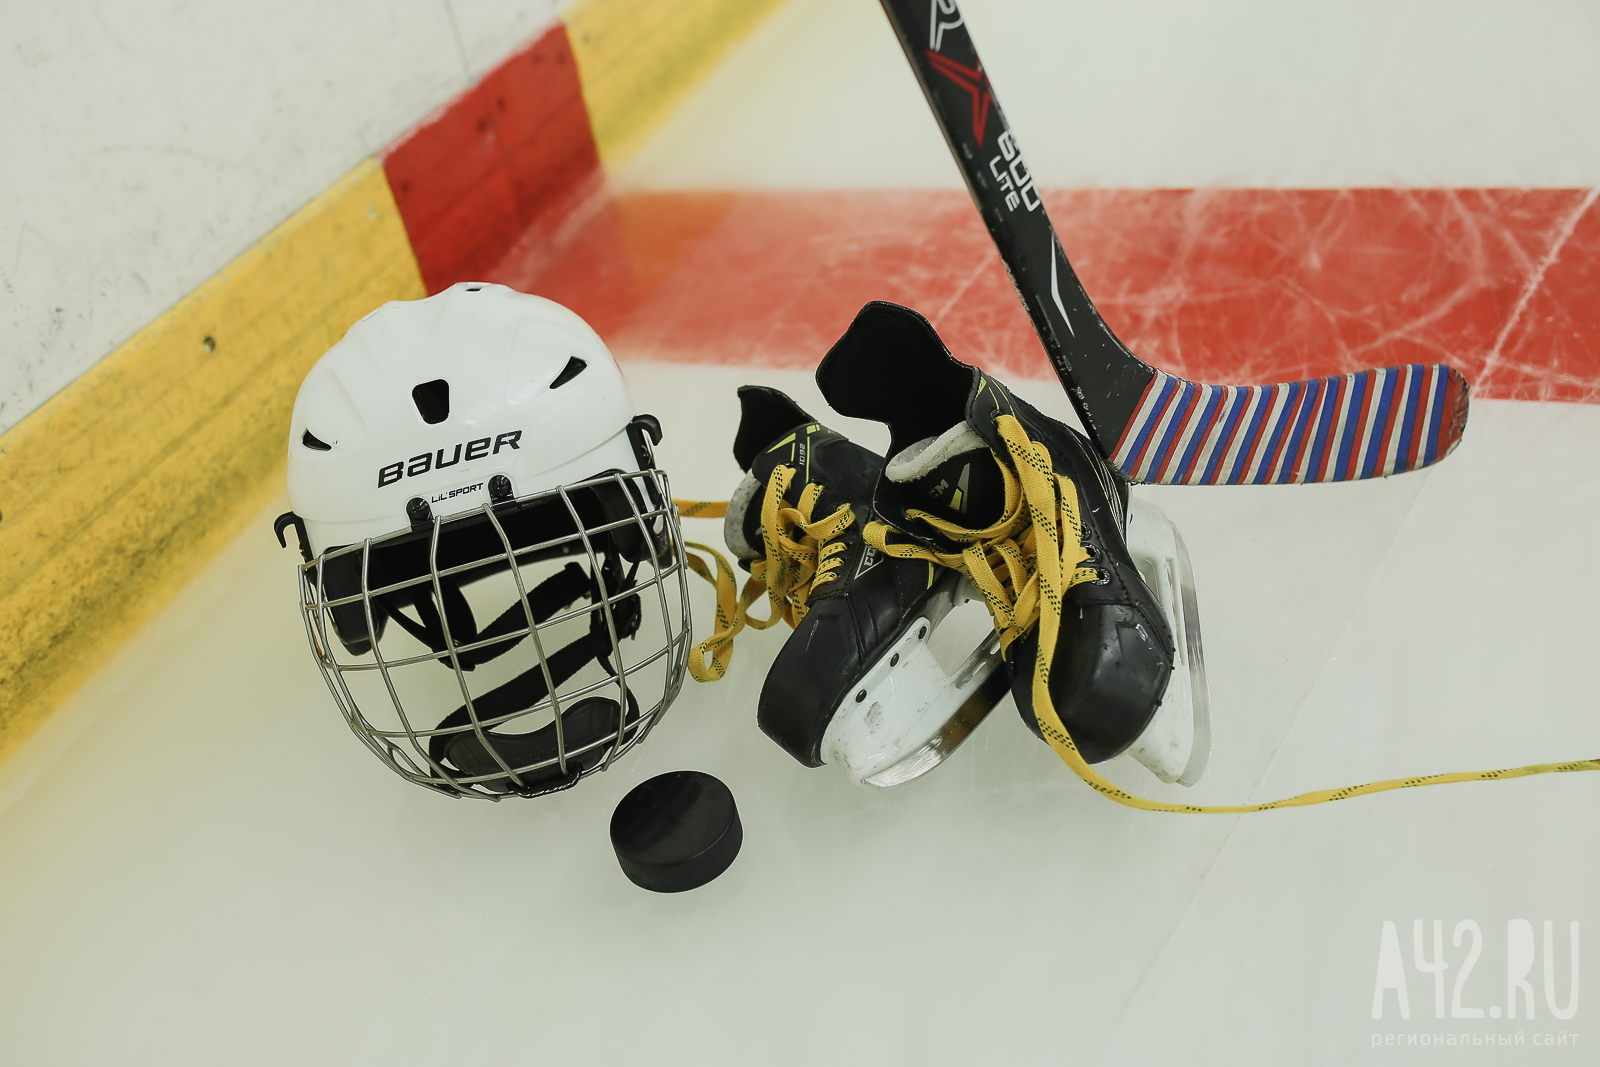 Для завершивших плей-офф в НХЛ кузбассовцев Федерация хоккея России не будет проводить турниры